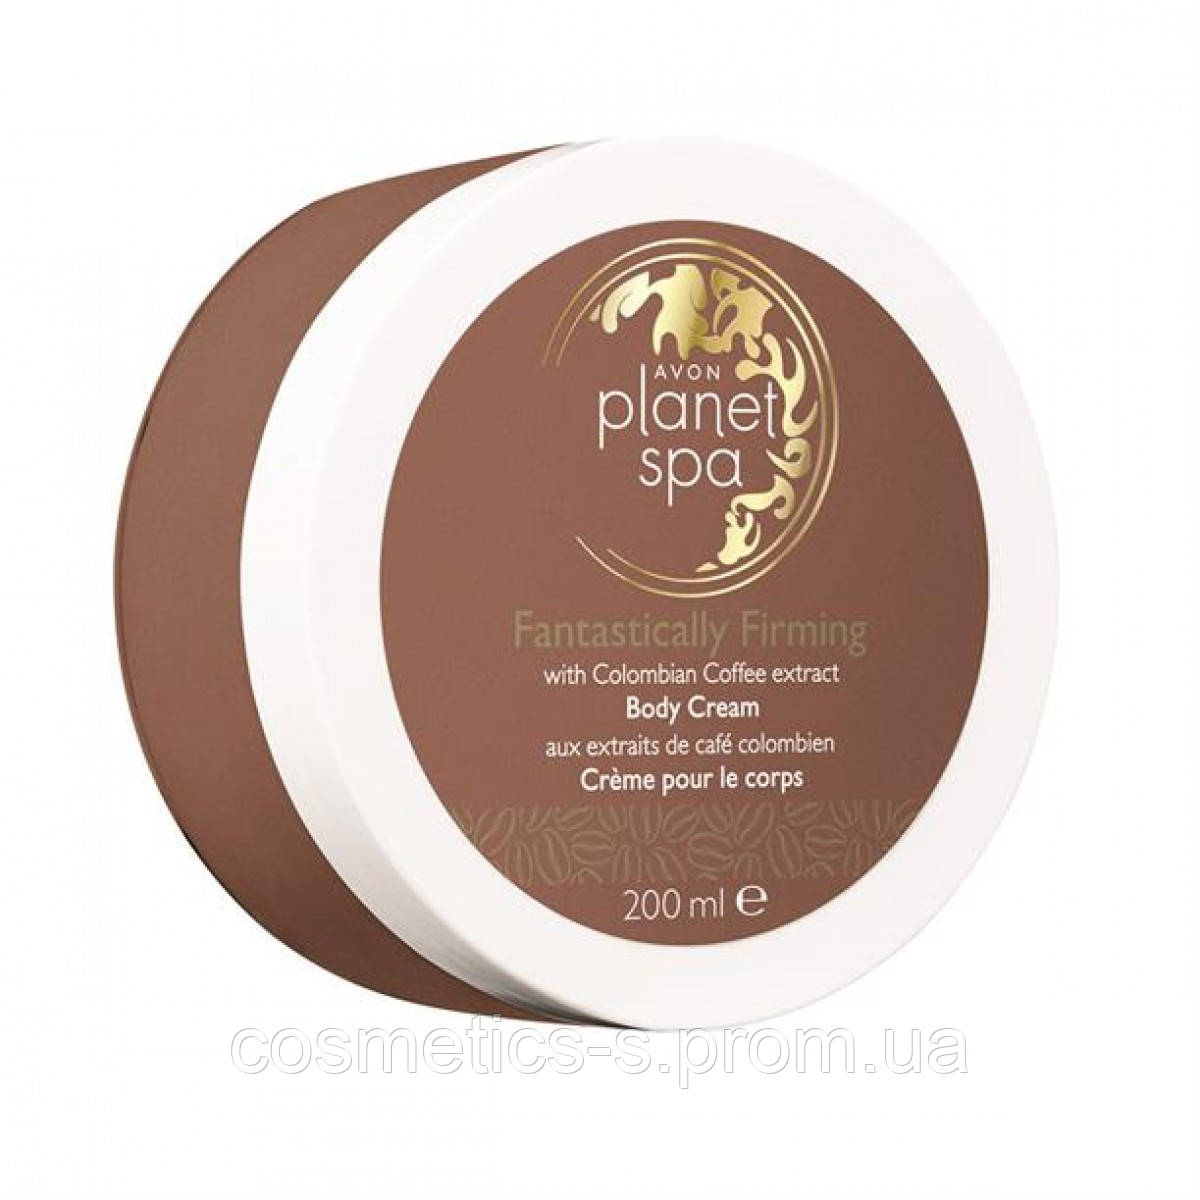 Planet Spa Крем для тіла з екстрактом Колумбійського кави Вчинене зміцнення, ейвон, Avon, Планет Спа,25389